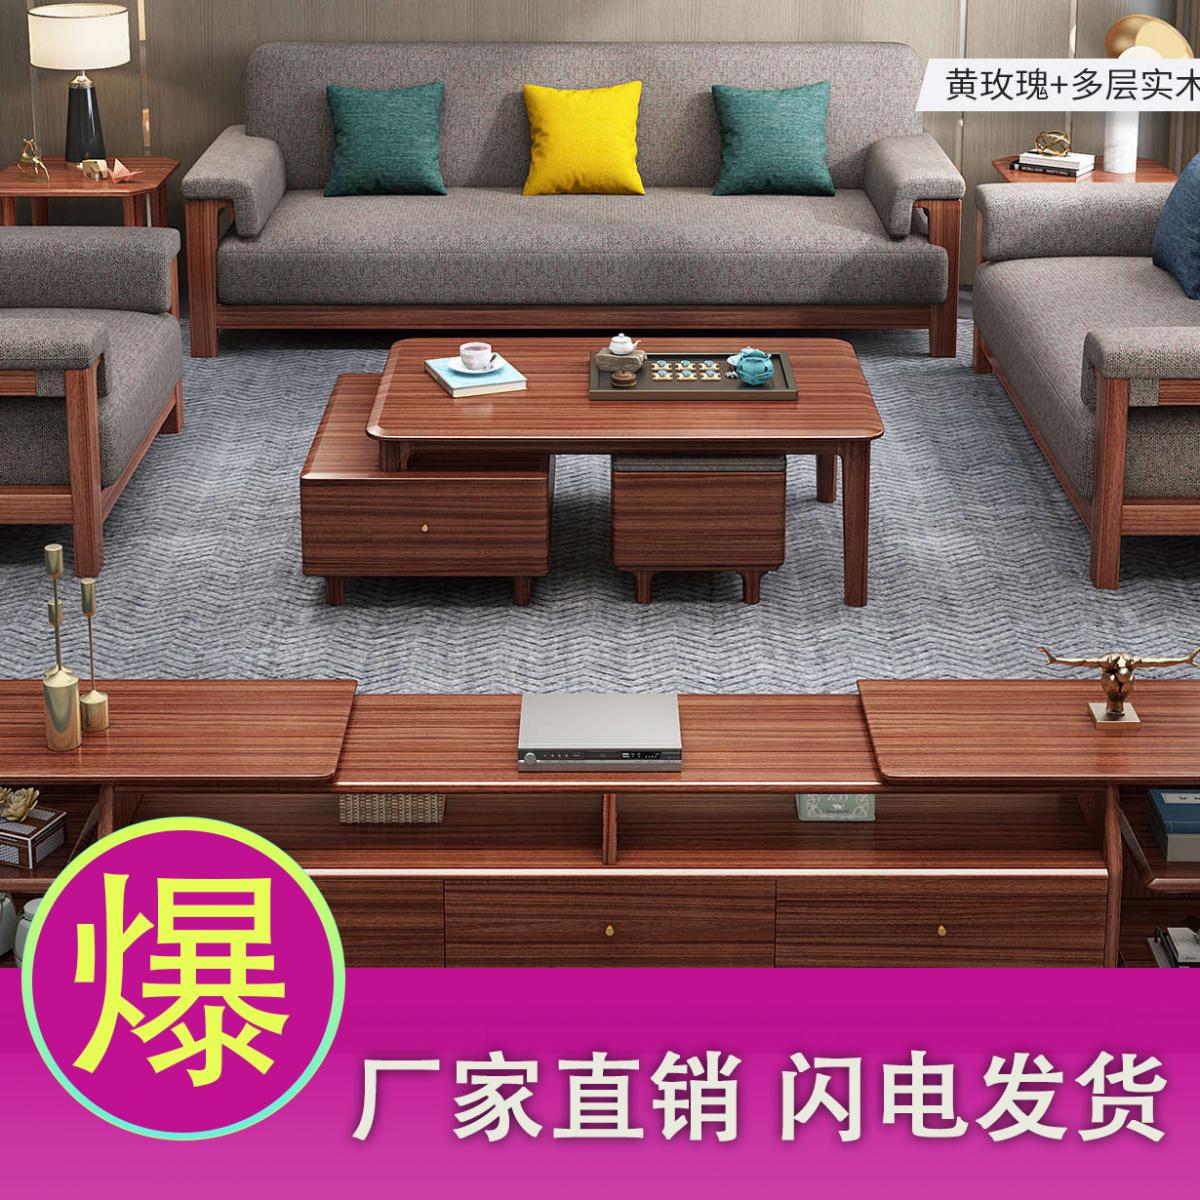 乌金木实木沙发组合轻奢套装现代简约布艺沙发客厅中式小户型家具